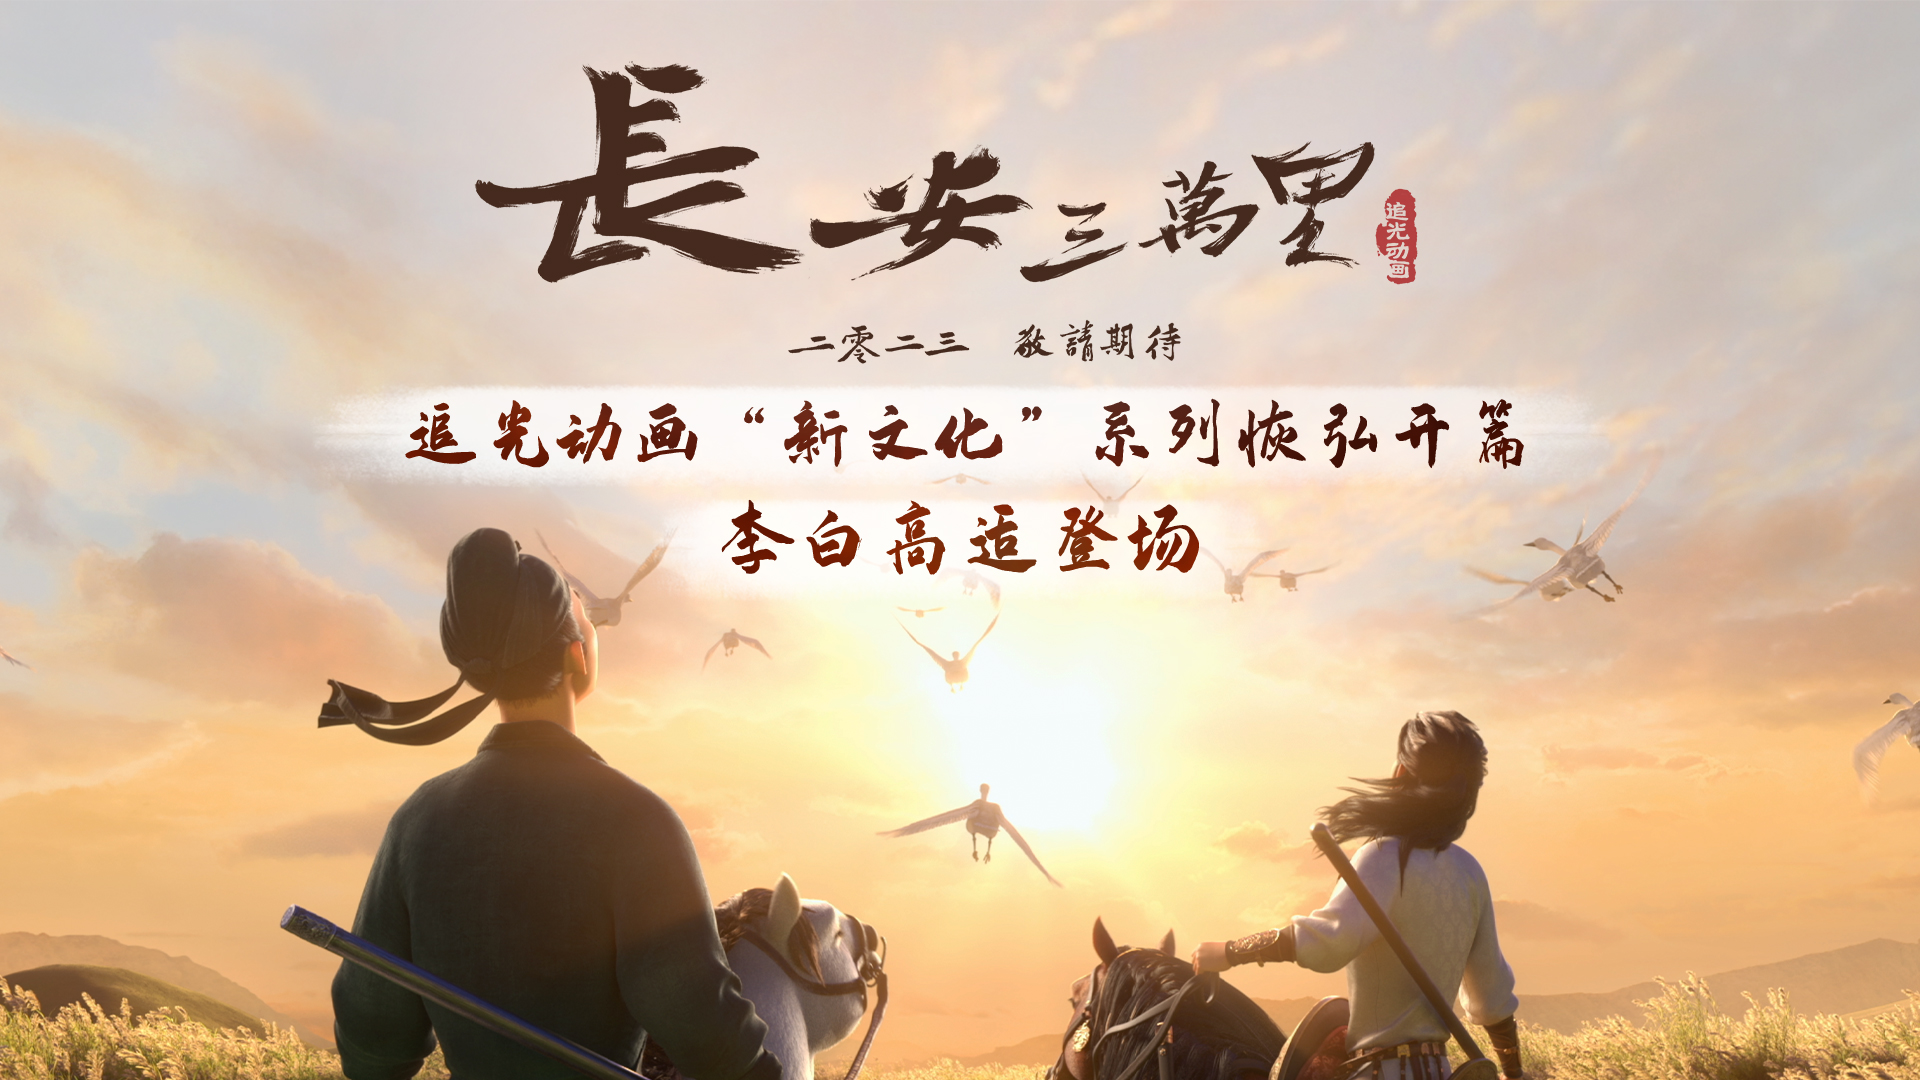 《长安三万里》，中国动画史上难得一见的佳作 -6park.com